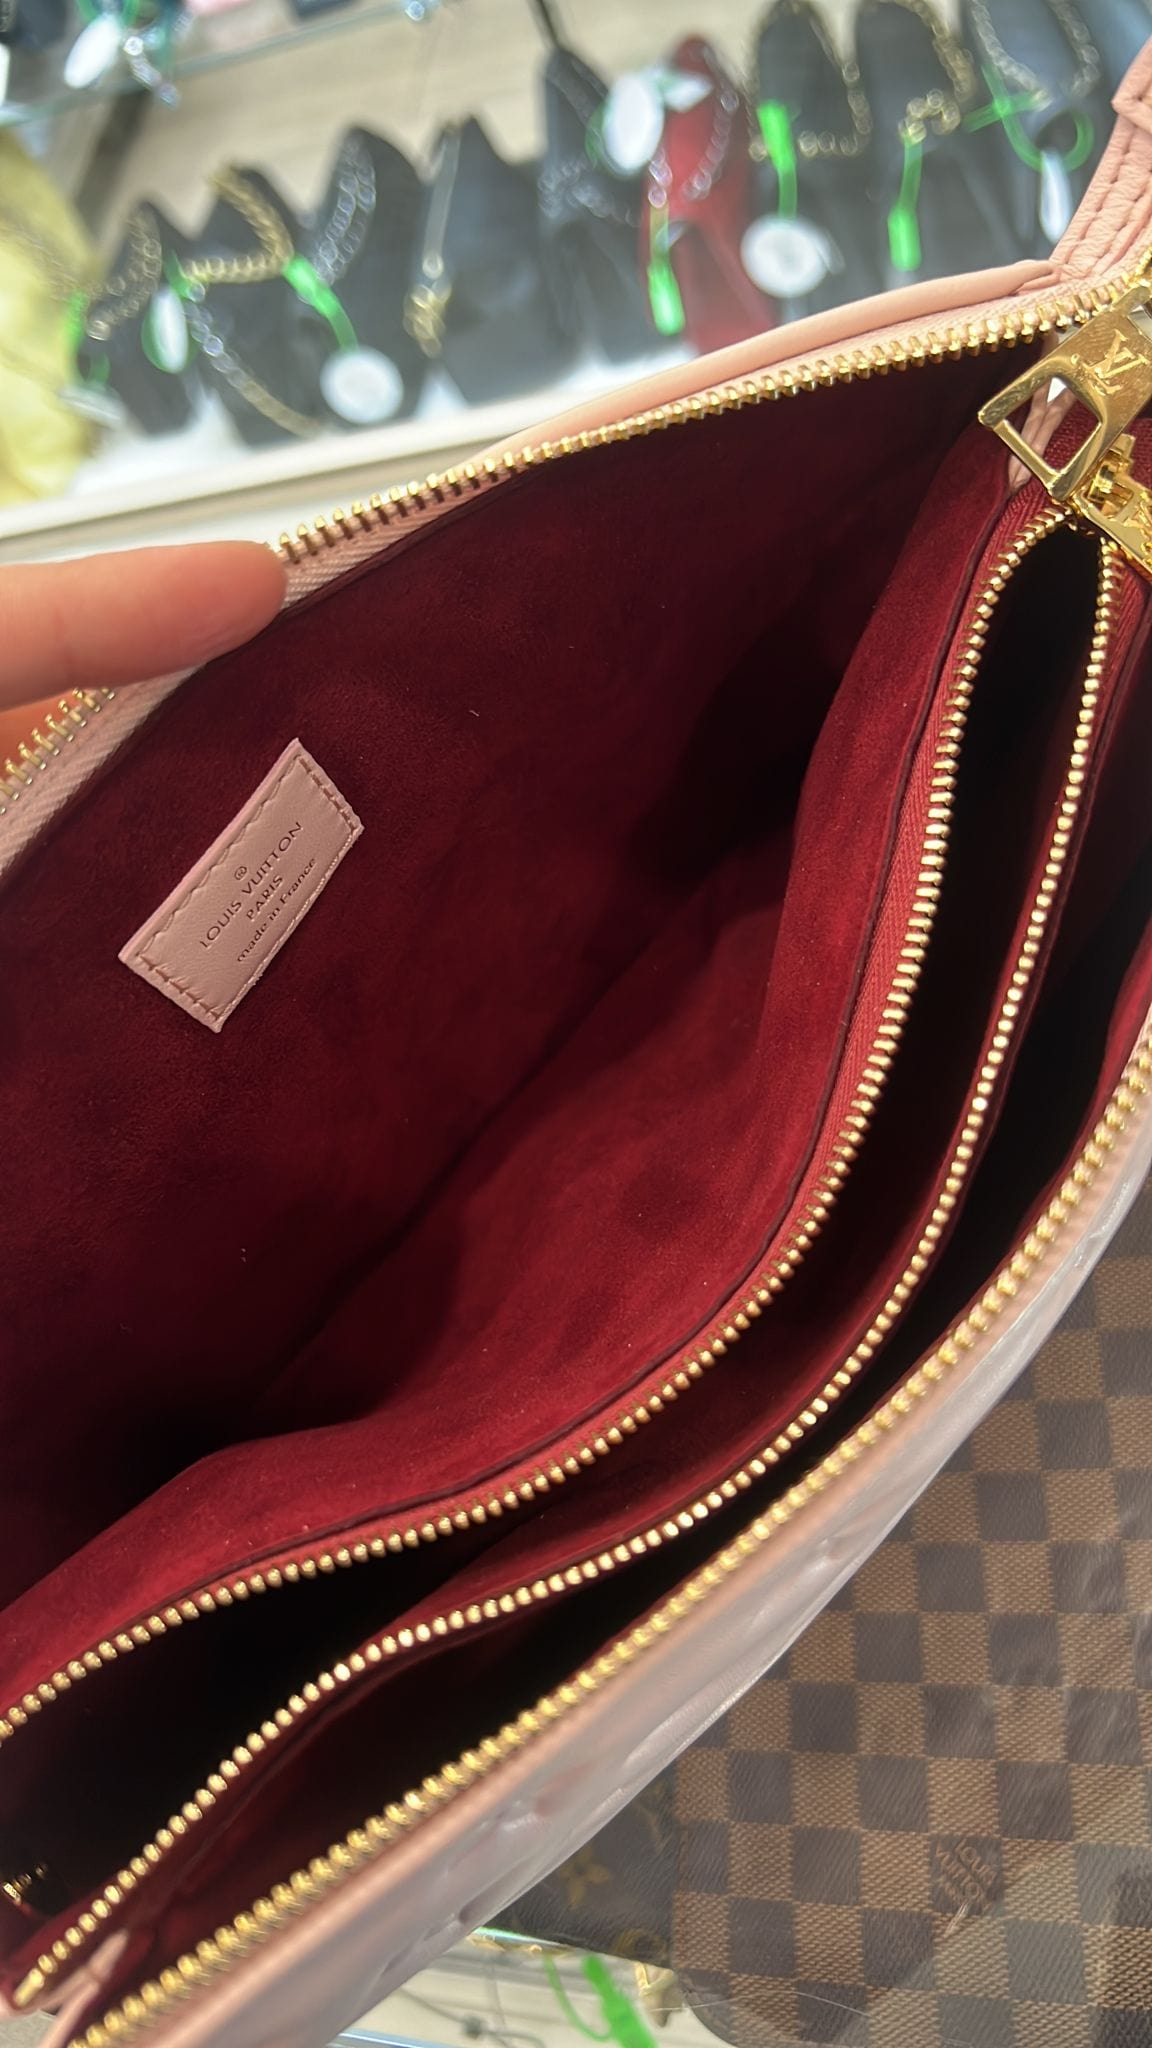 Louis Vuitton Coussin MM Shoulder Bag